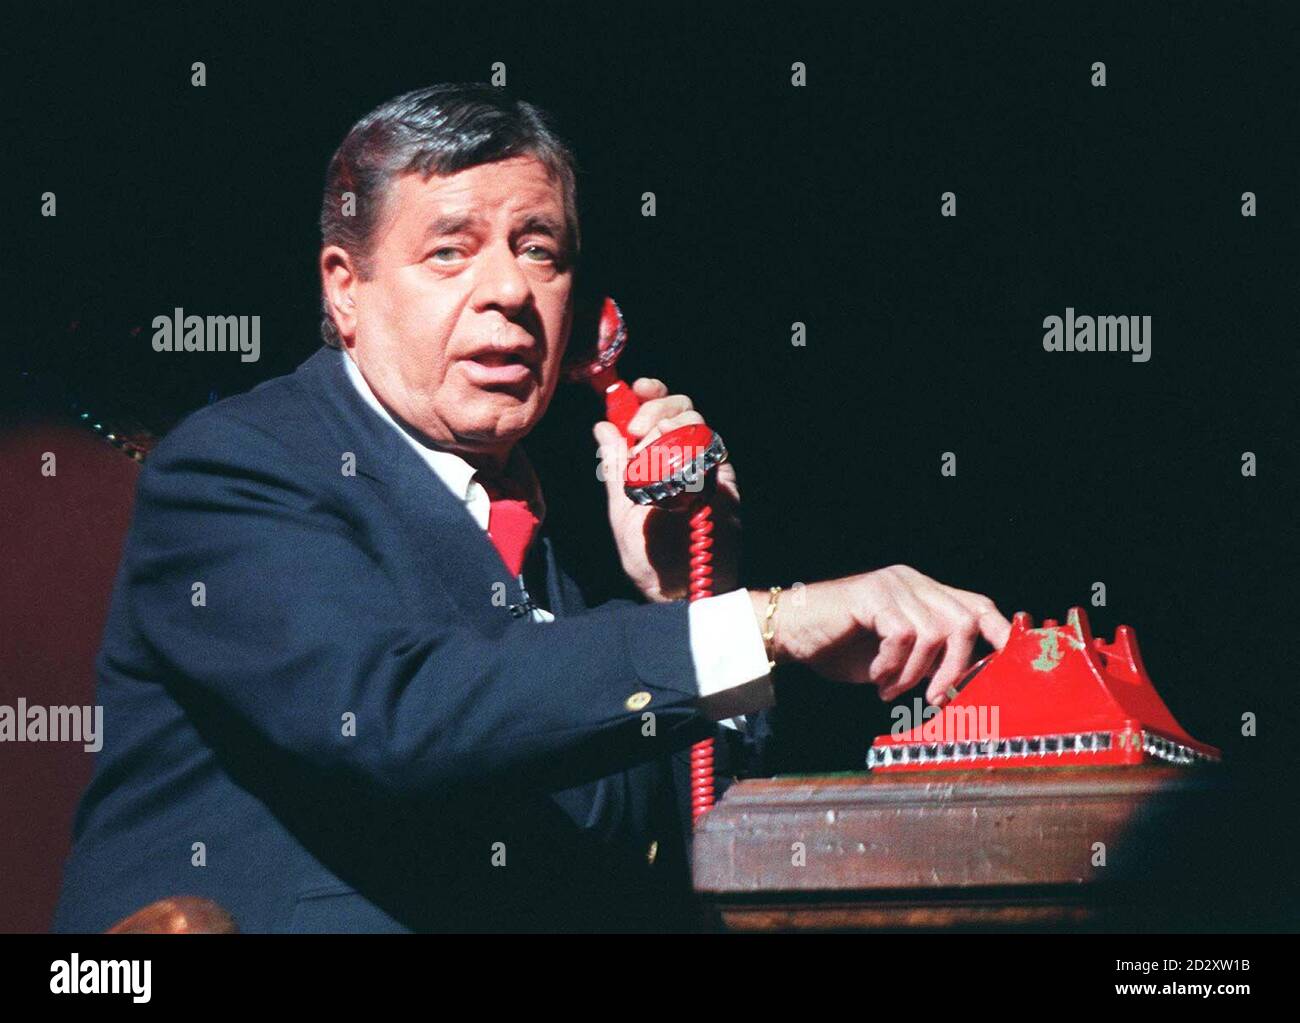 Il leggendario intrattenitore americano, Jerry Lewis, in costume e carattere per il suo debutto nel nuovo musical 'Damn Yankees' che inizia oggi al Teatro Adelphi nel West End di Londra (Giovedi). Foto di David Giles/PA. Foto Stock